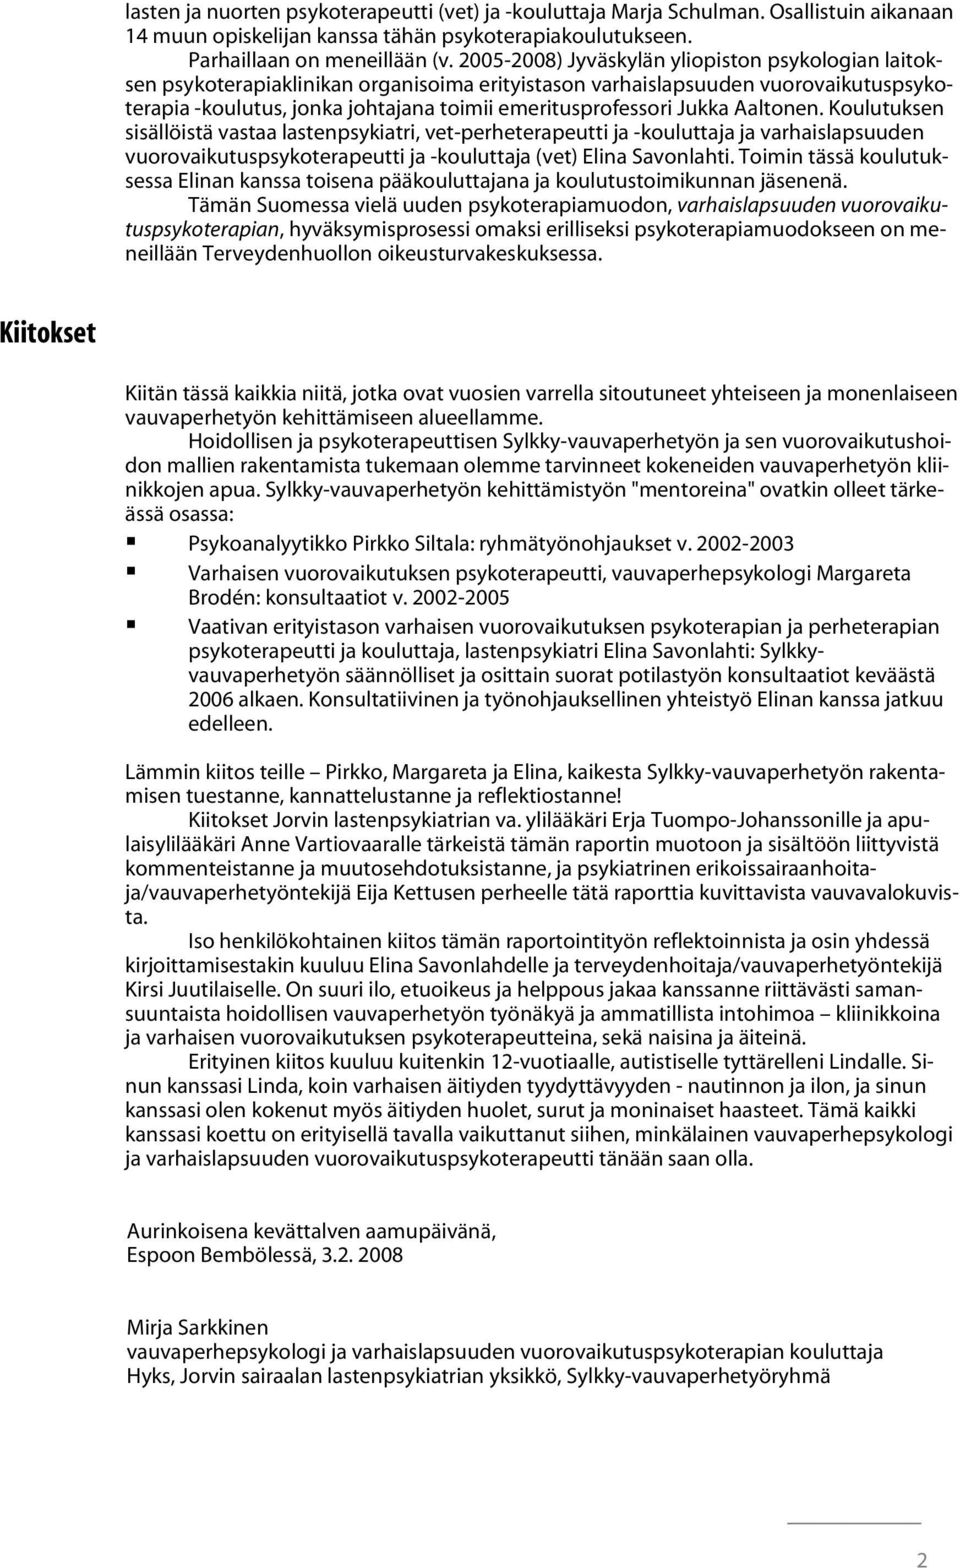 Jukka Aaltonen. Koulutuksen sisällöistä vastaa lastenpsykiatri, vet-perheterapeutti ja -kouluttaja ja varhaislapsuuden vuorovaikutuspsykoterapeutti ja -kouluttaja (vet) Elina Savonlahti.